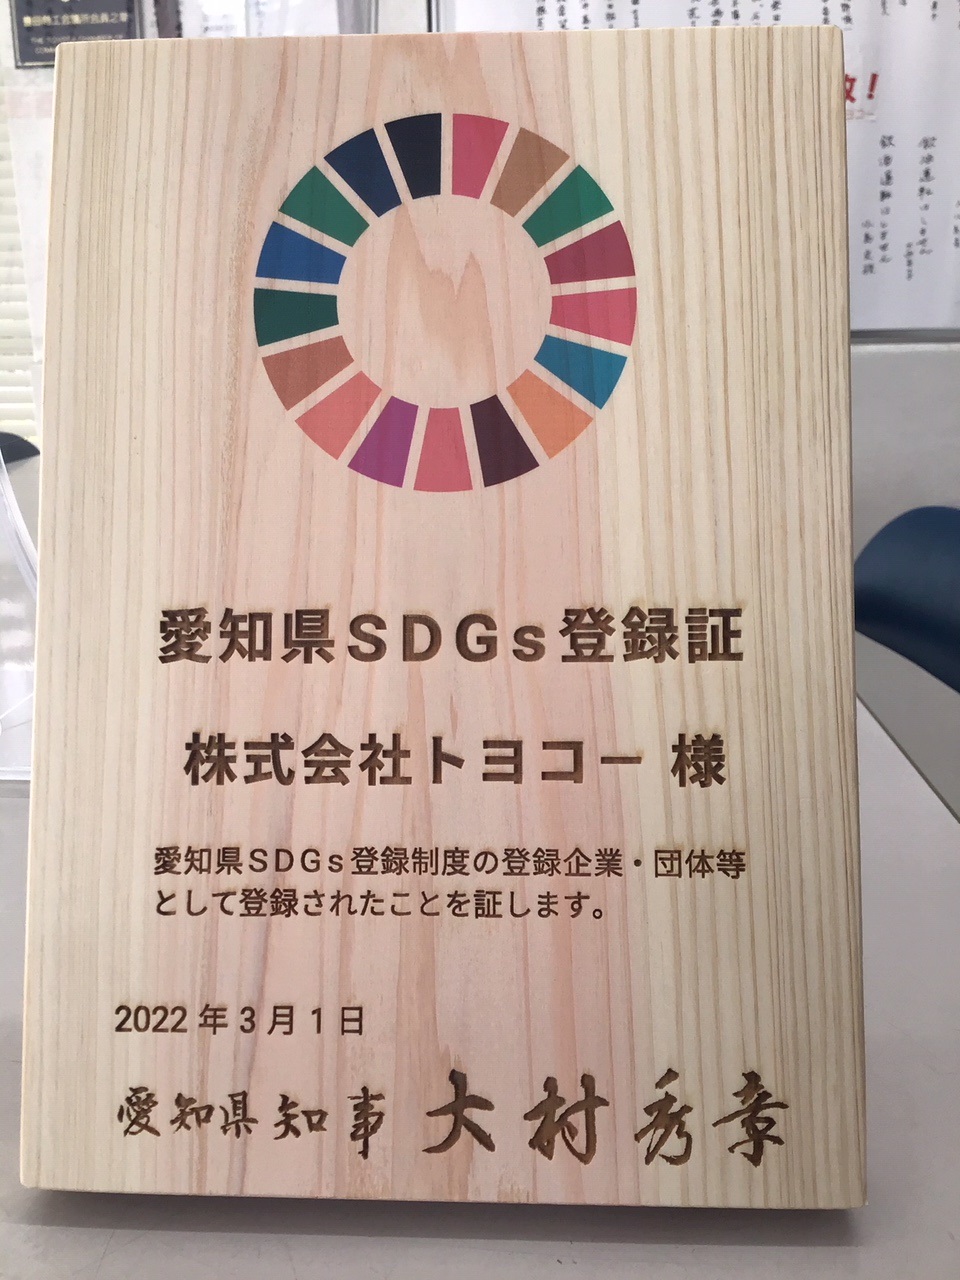 愛知県SDGsの登録企業として登録されました